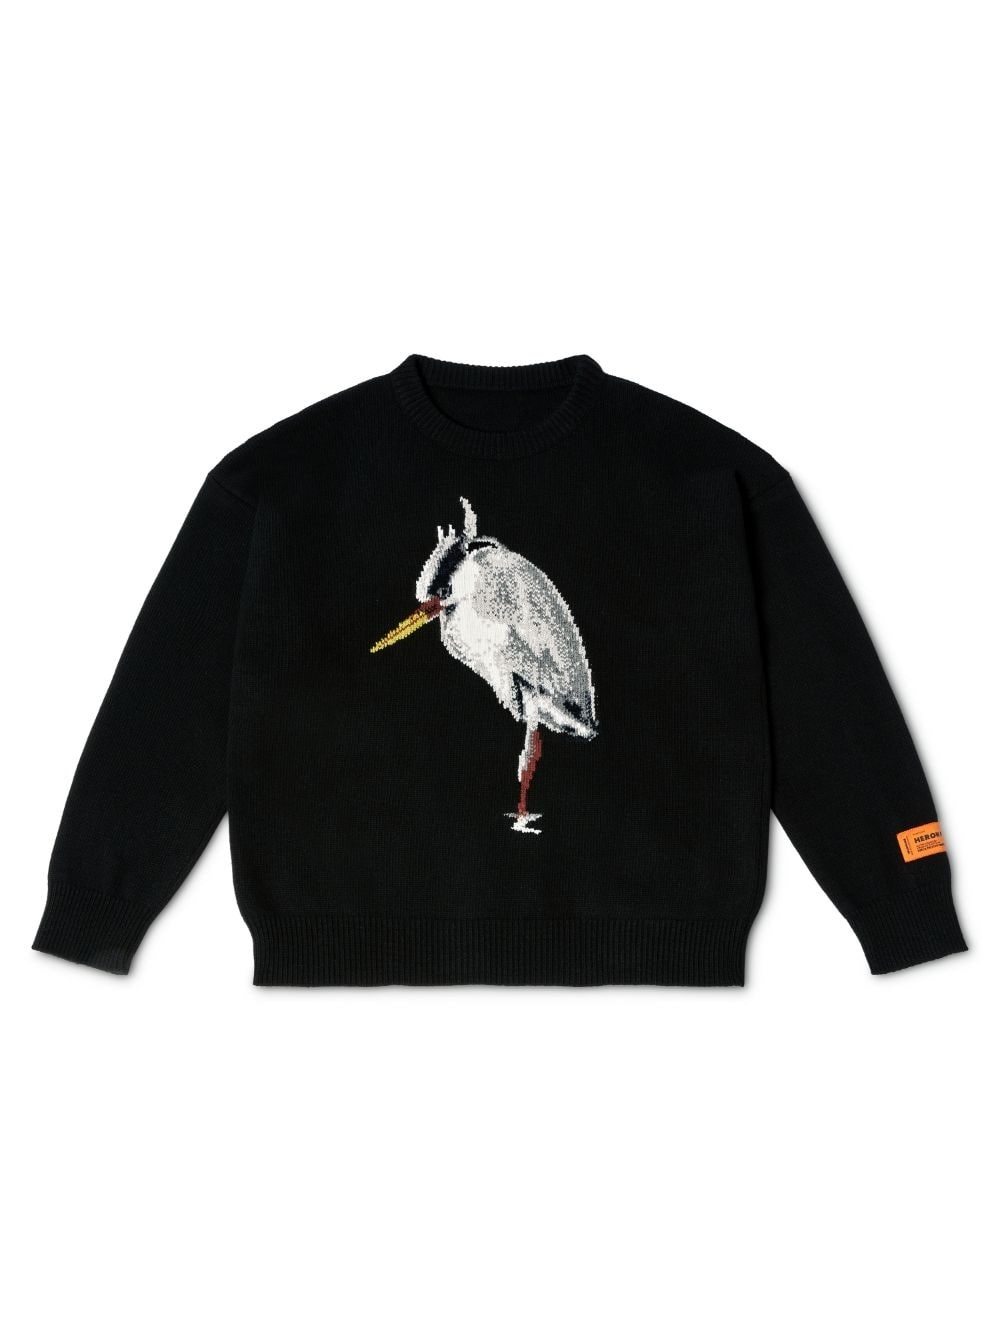 Heron Bird Knit Crewneck - 1